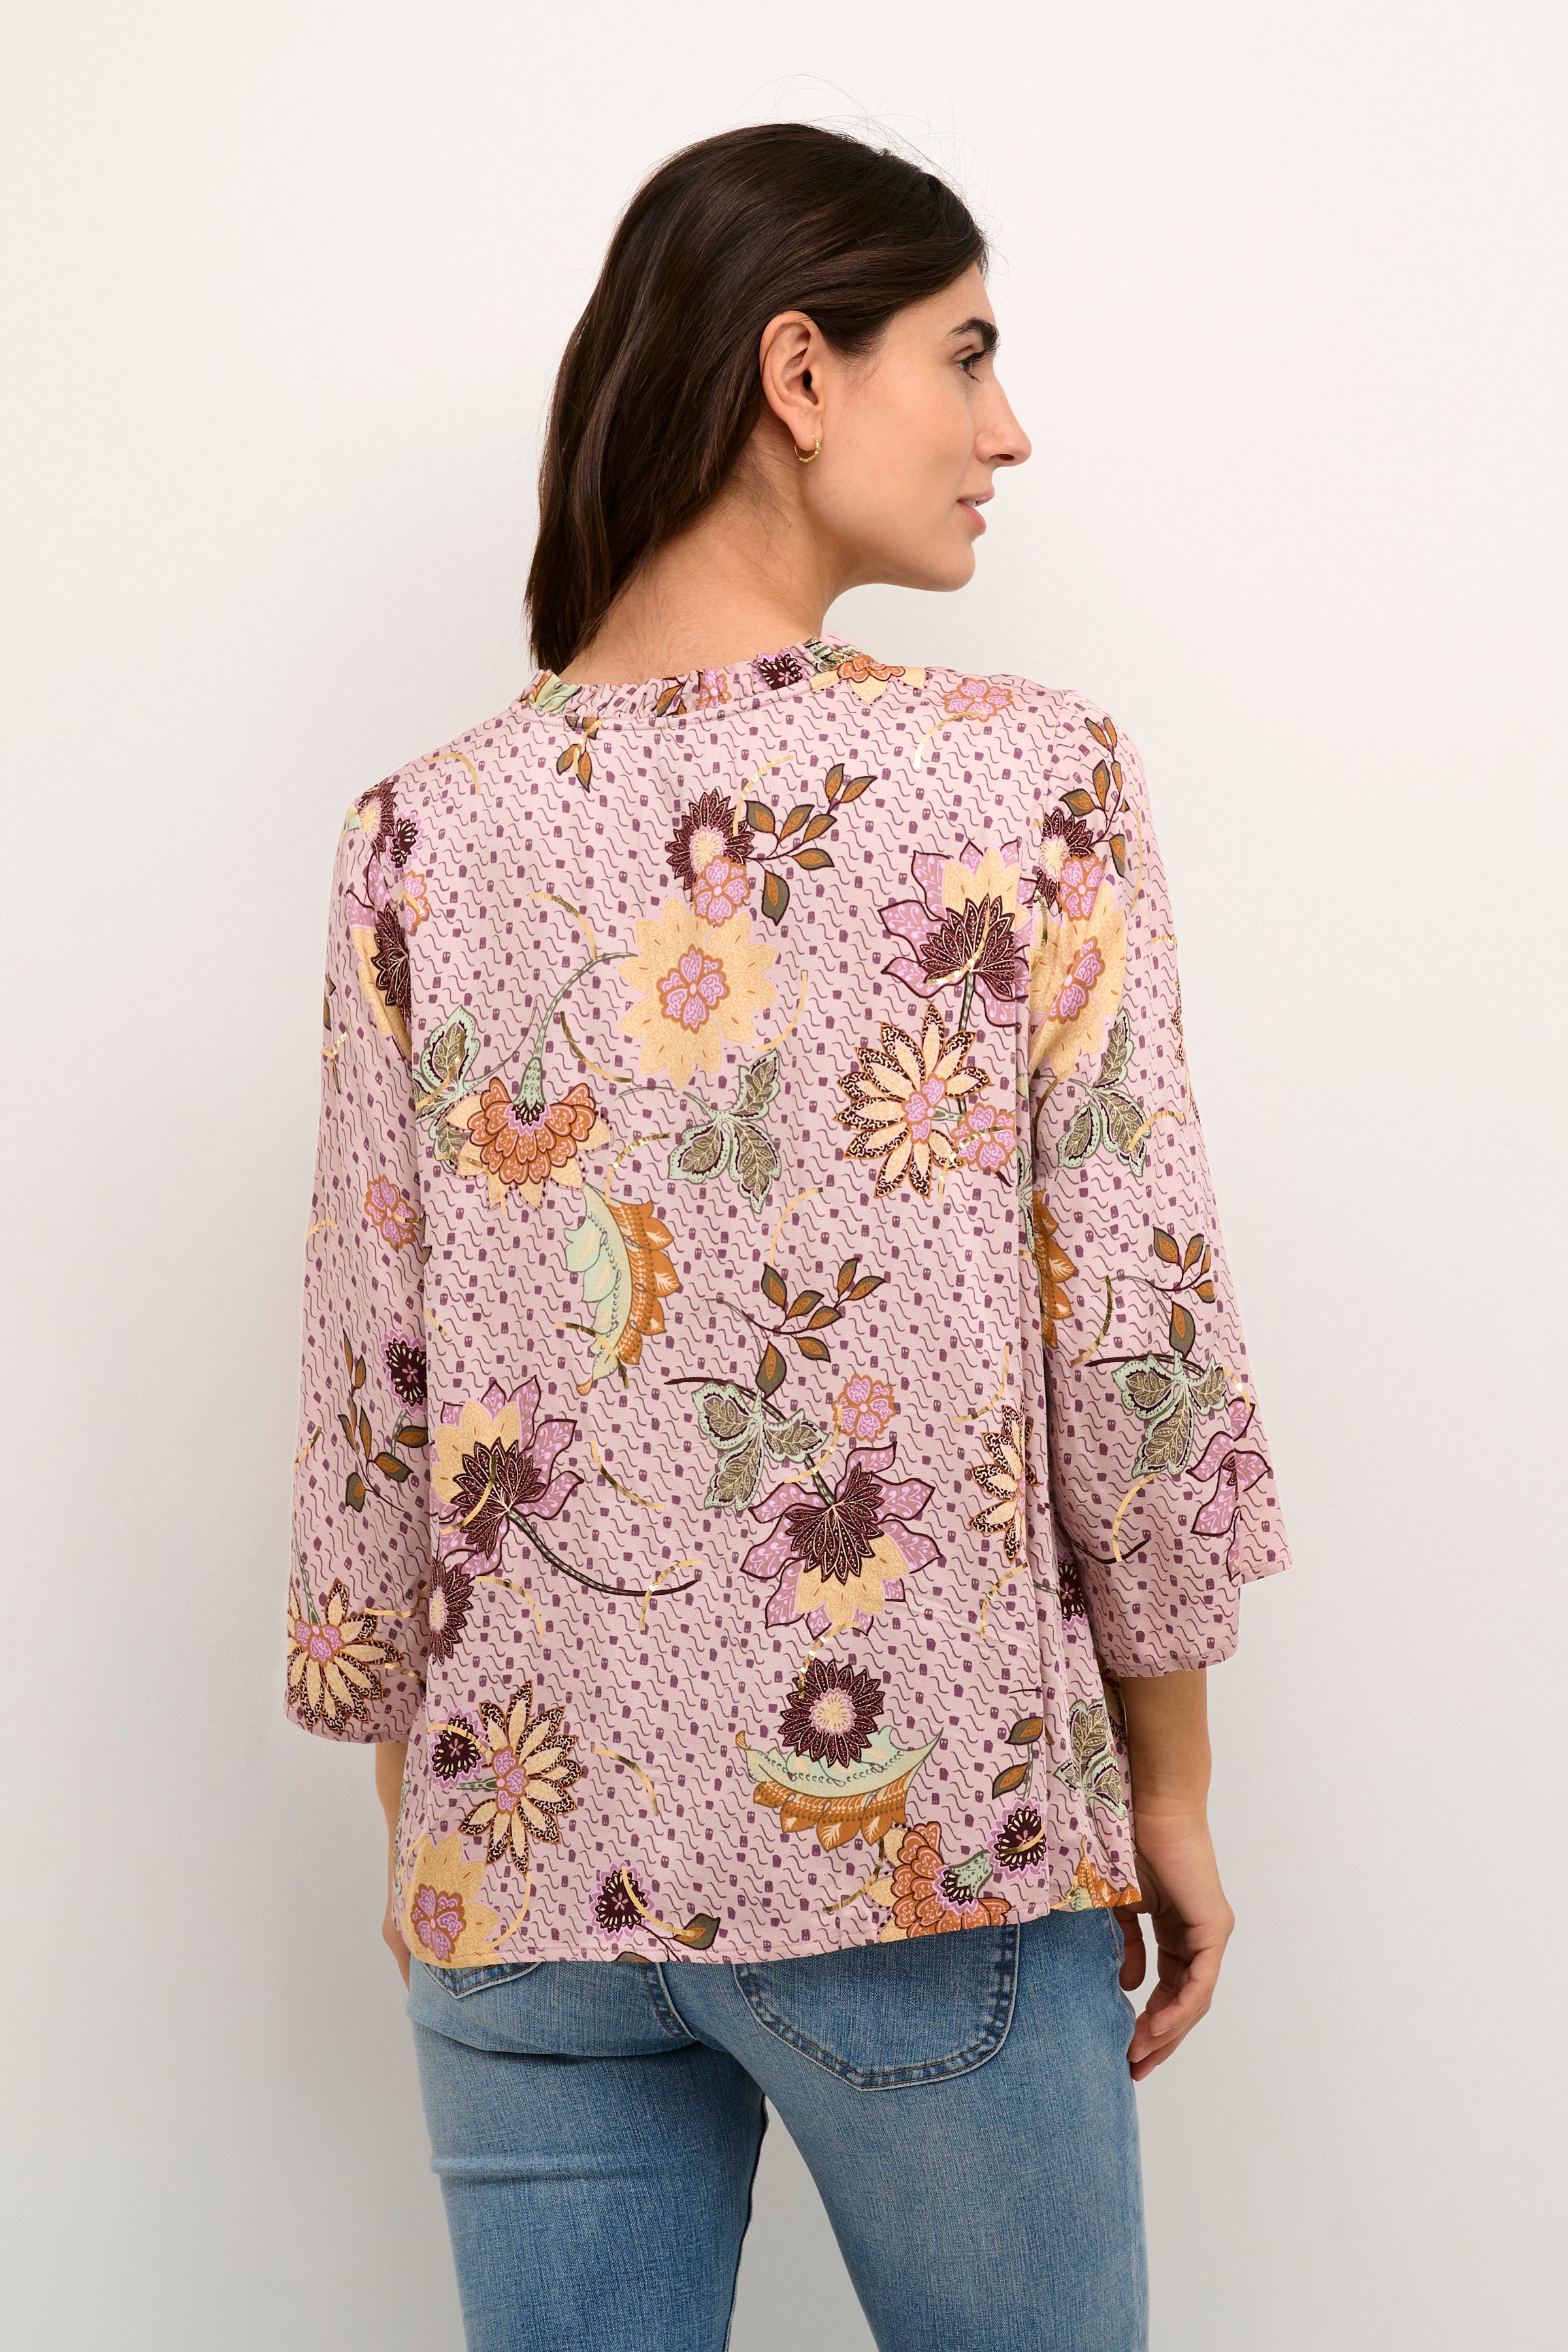 Tamo blouse by Culture - pale mauve